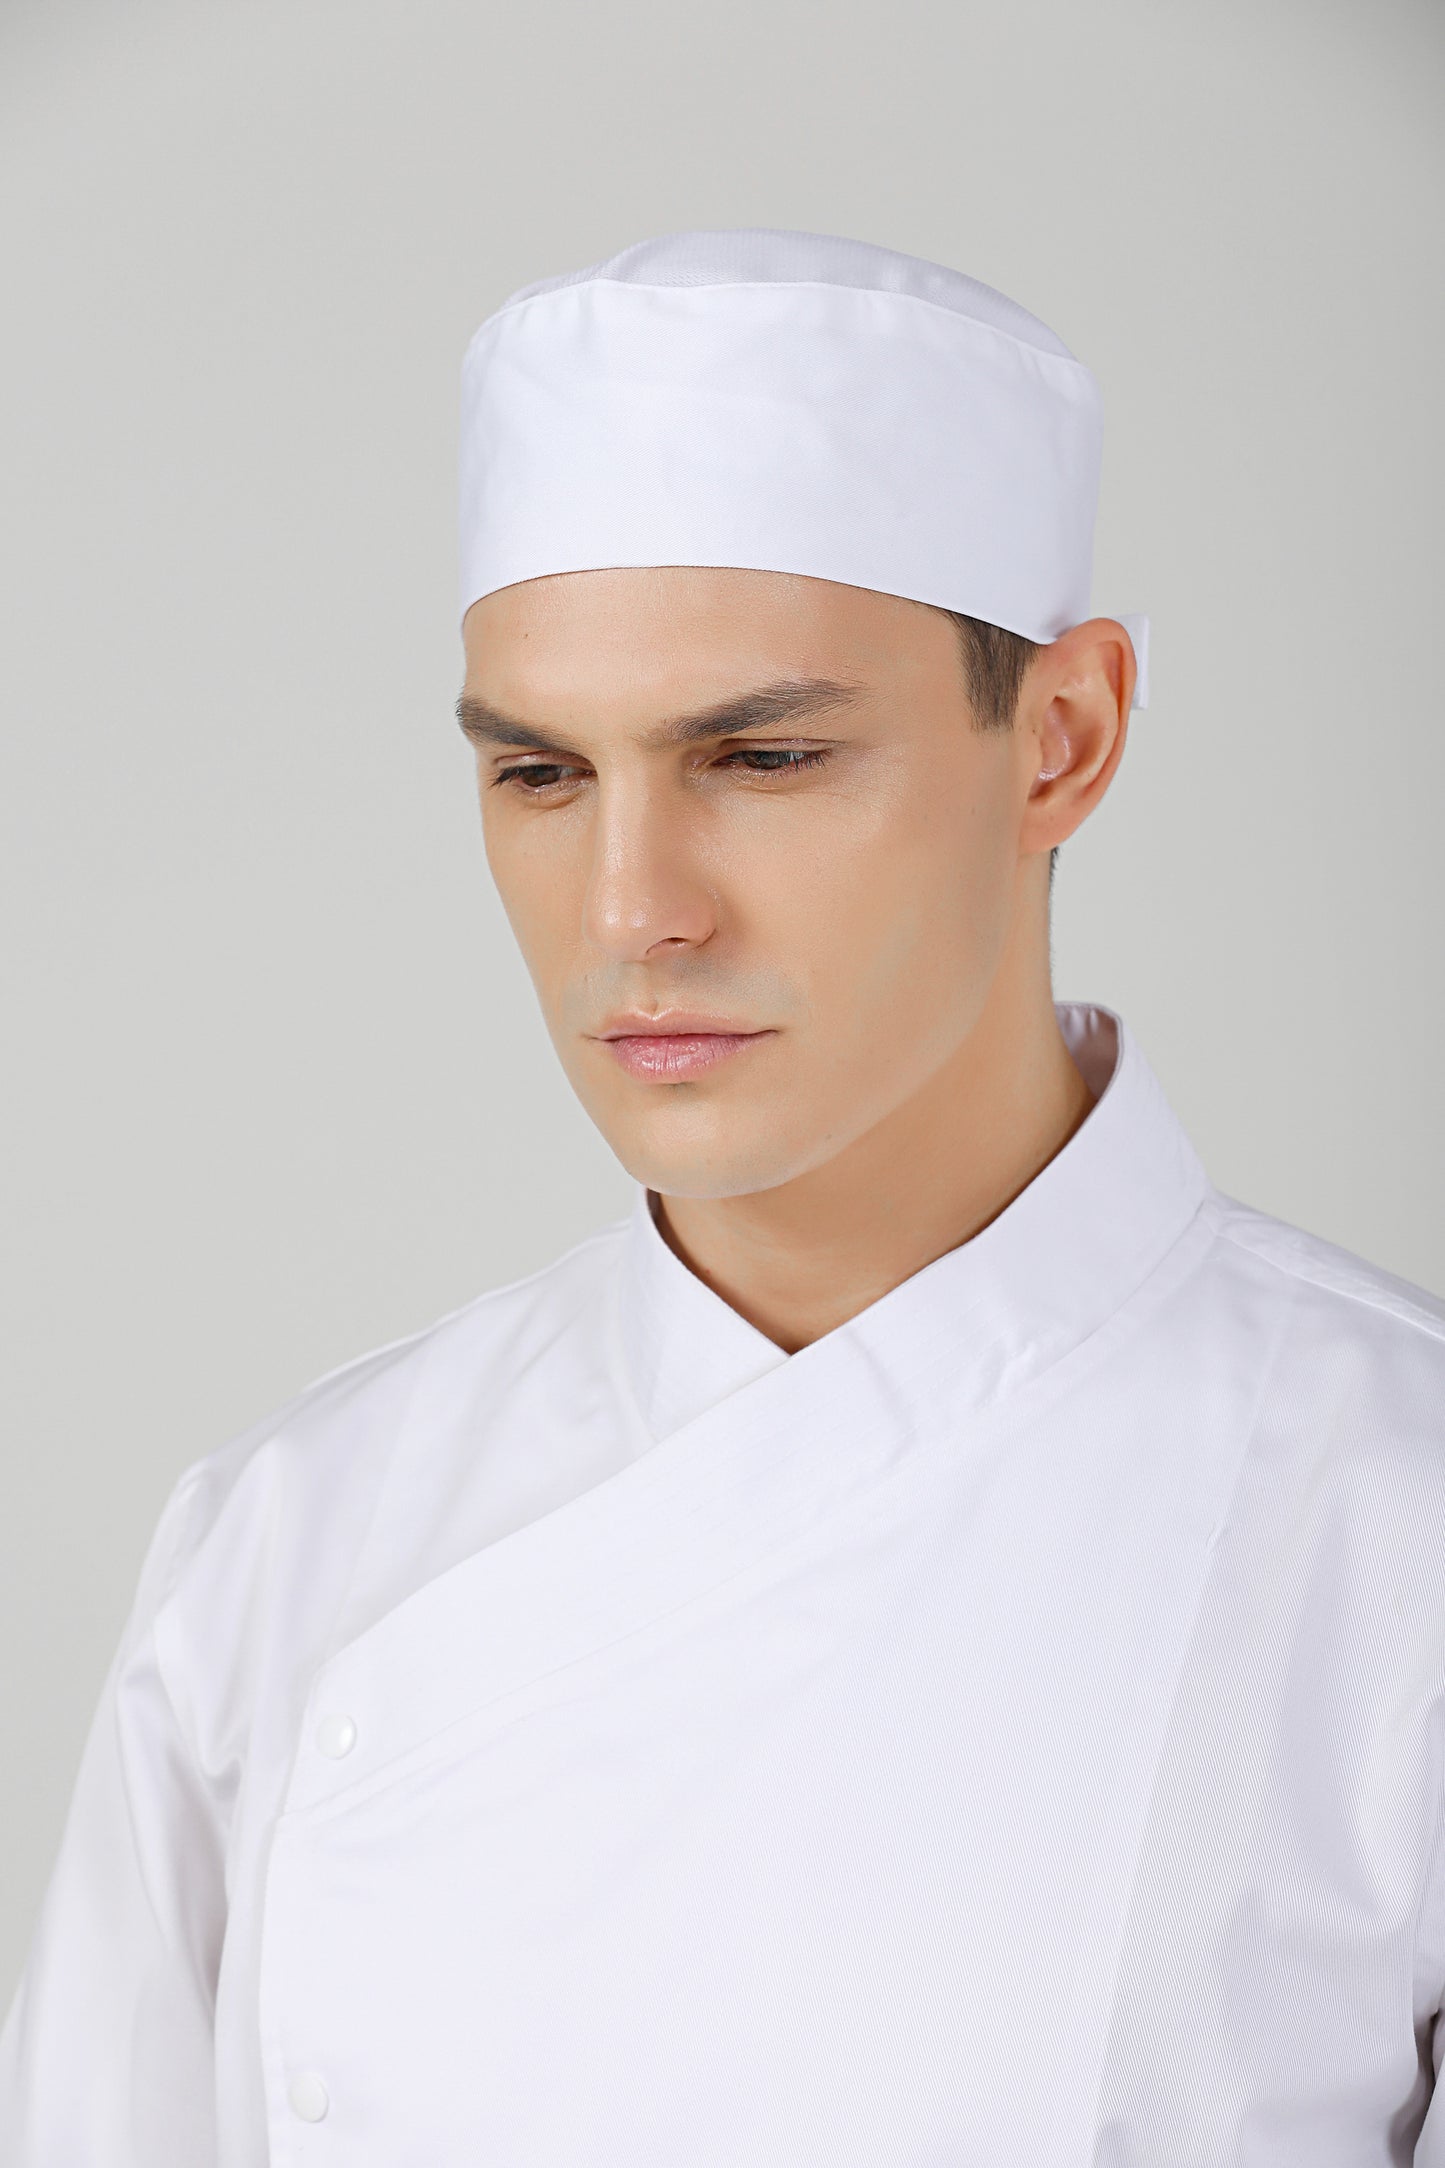 Gladiolus White Chef Beanie, Dri-fit Vent